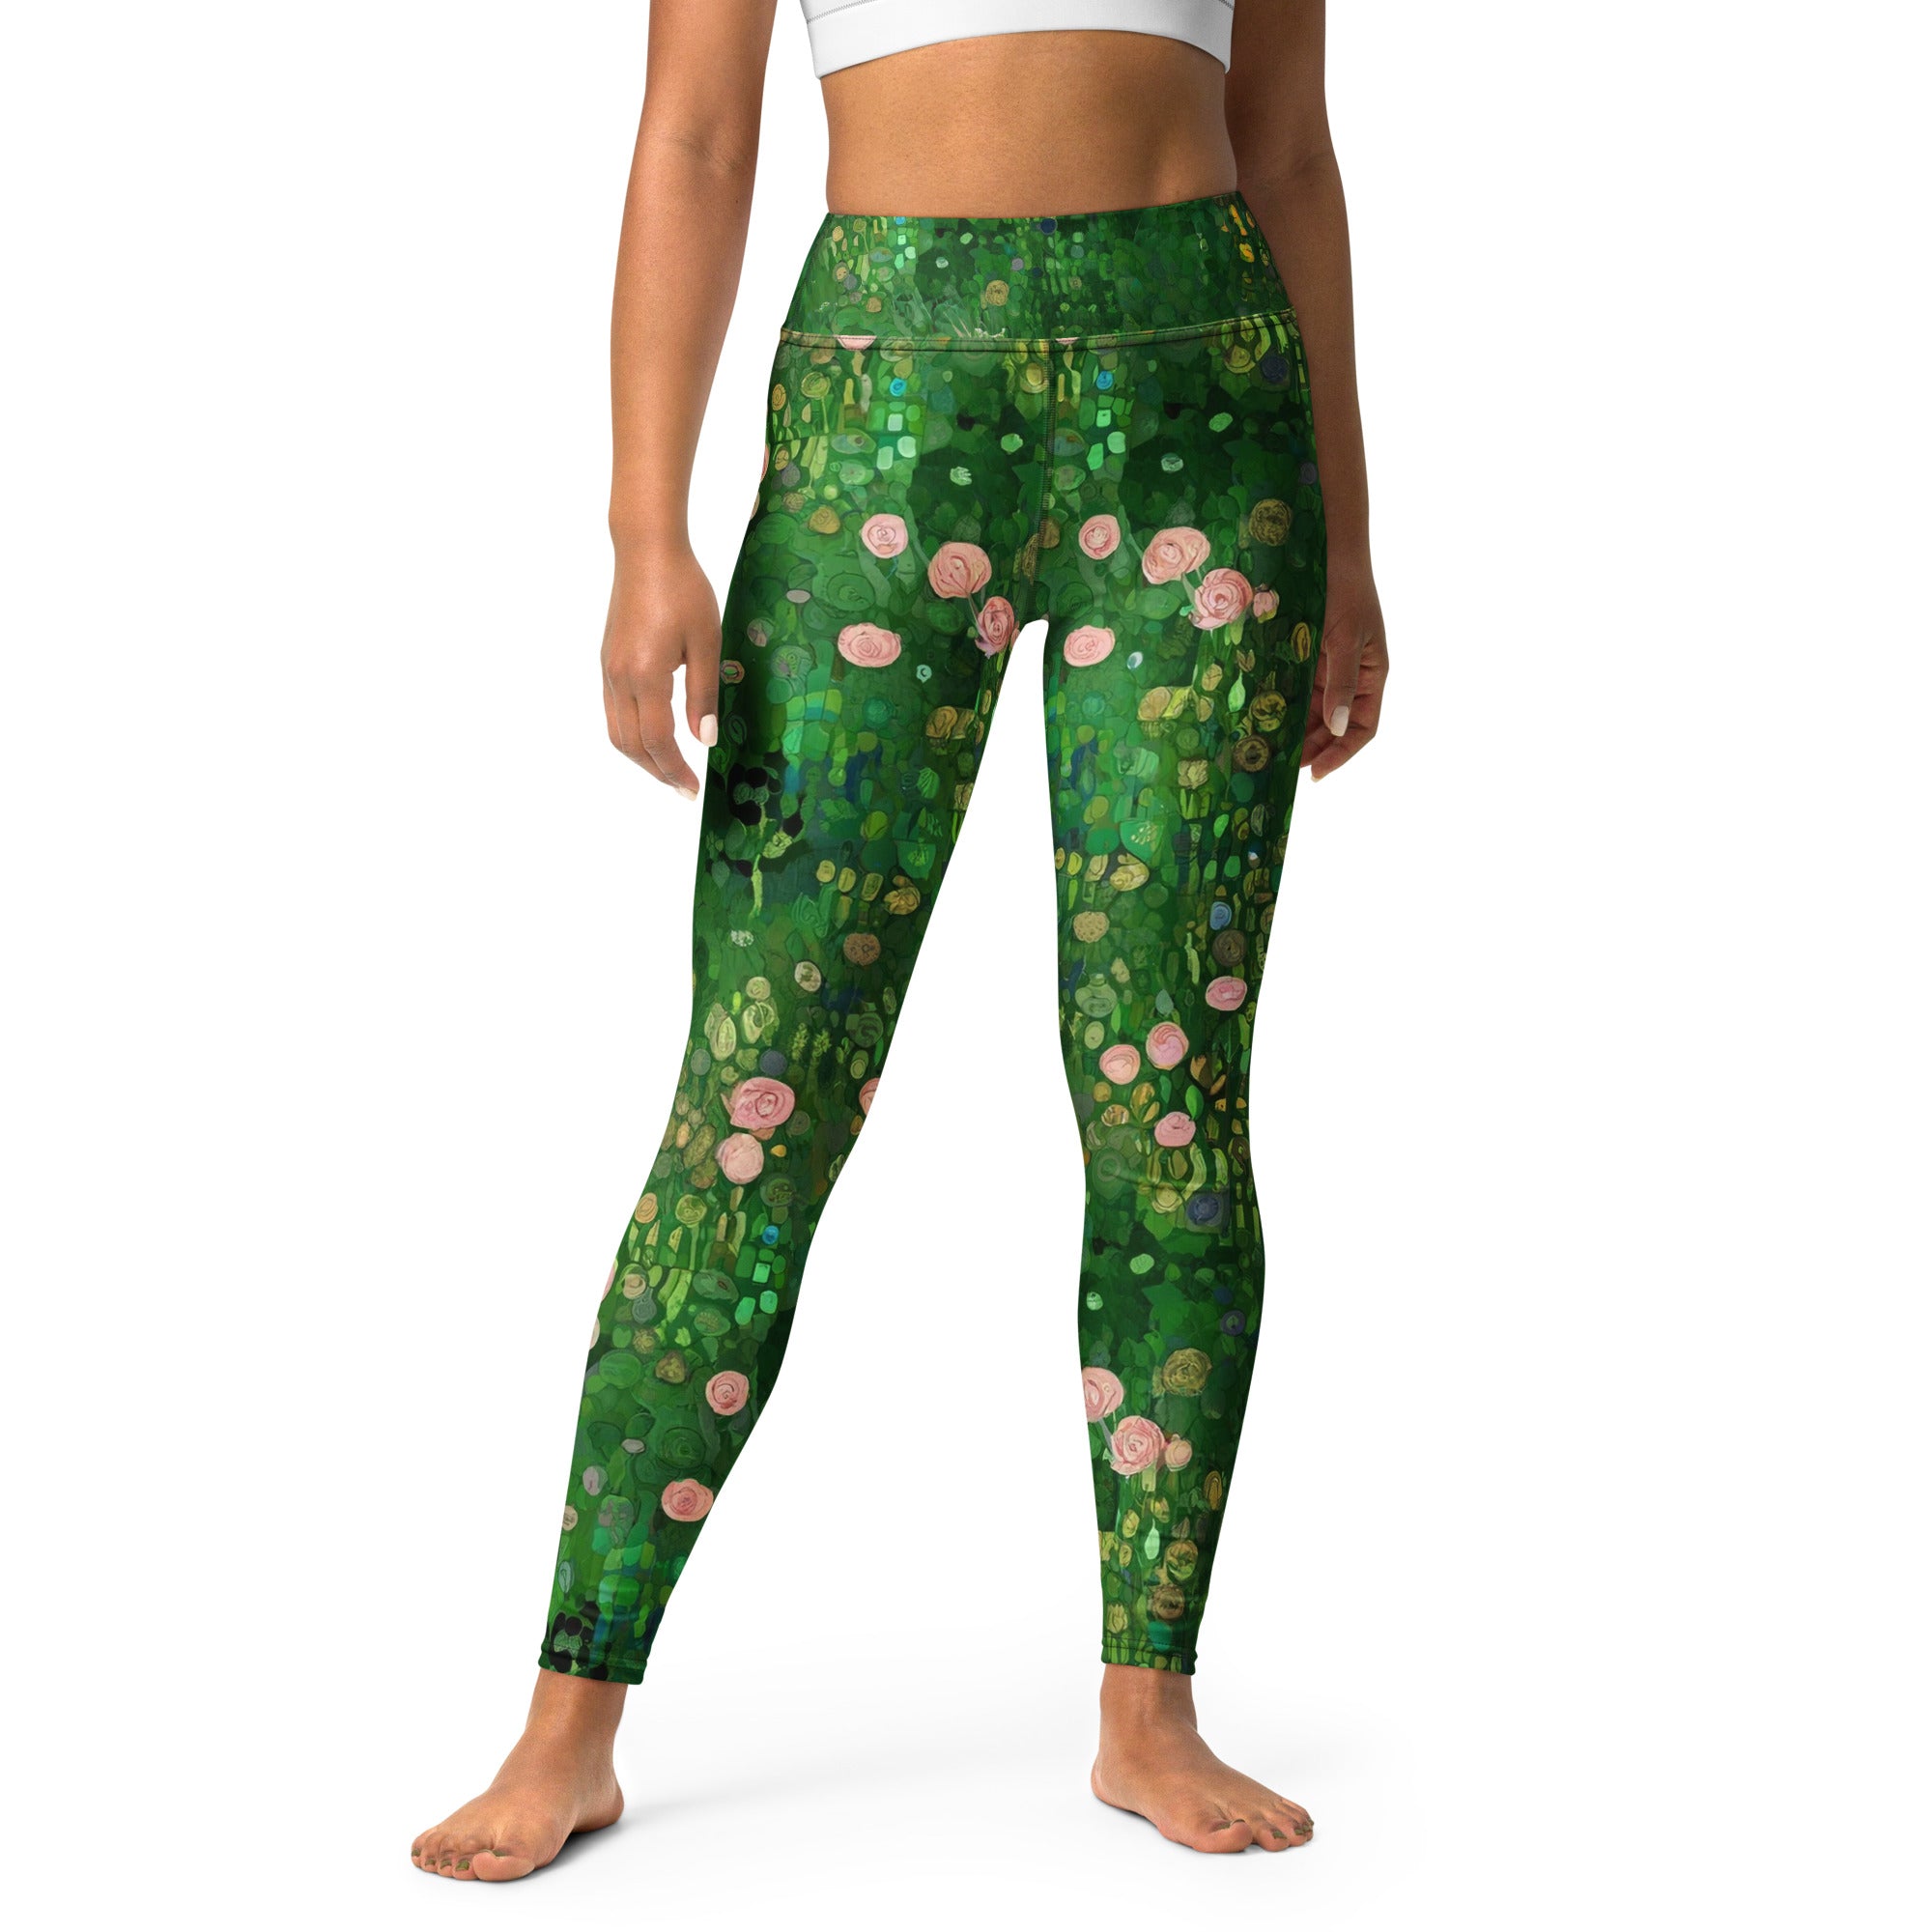 Gustav Klimt 'Rosebushes under the Trees' Famous Painting Yoga Leggings | Premium Art Yoga Leggings